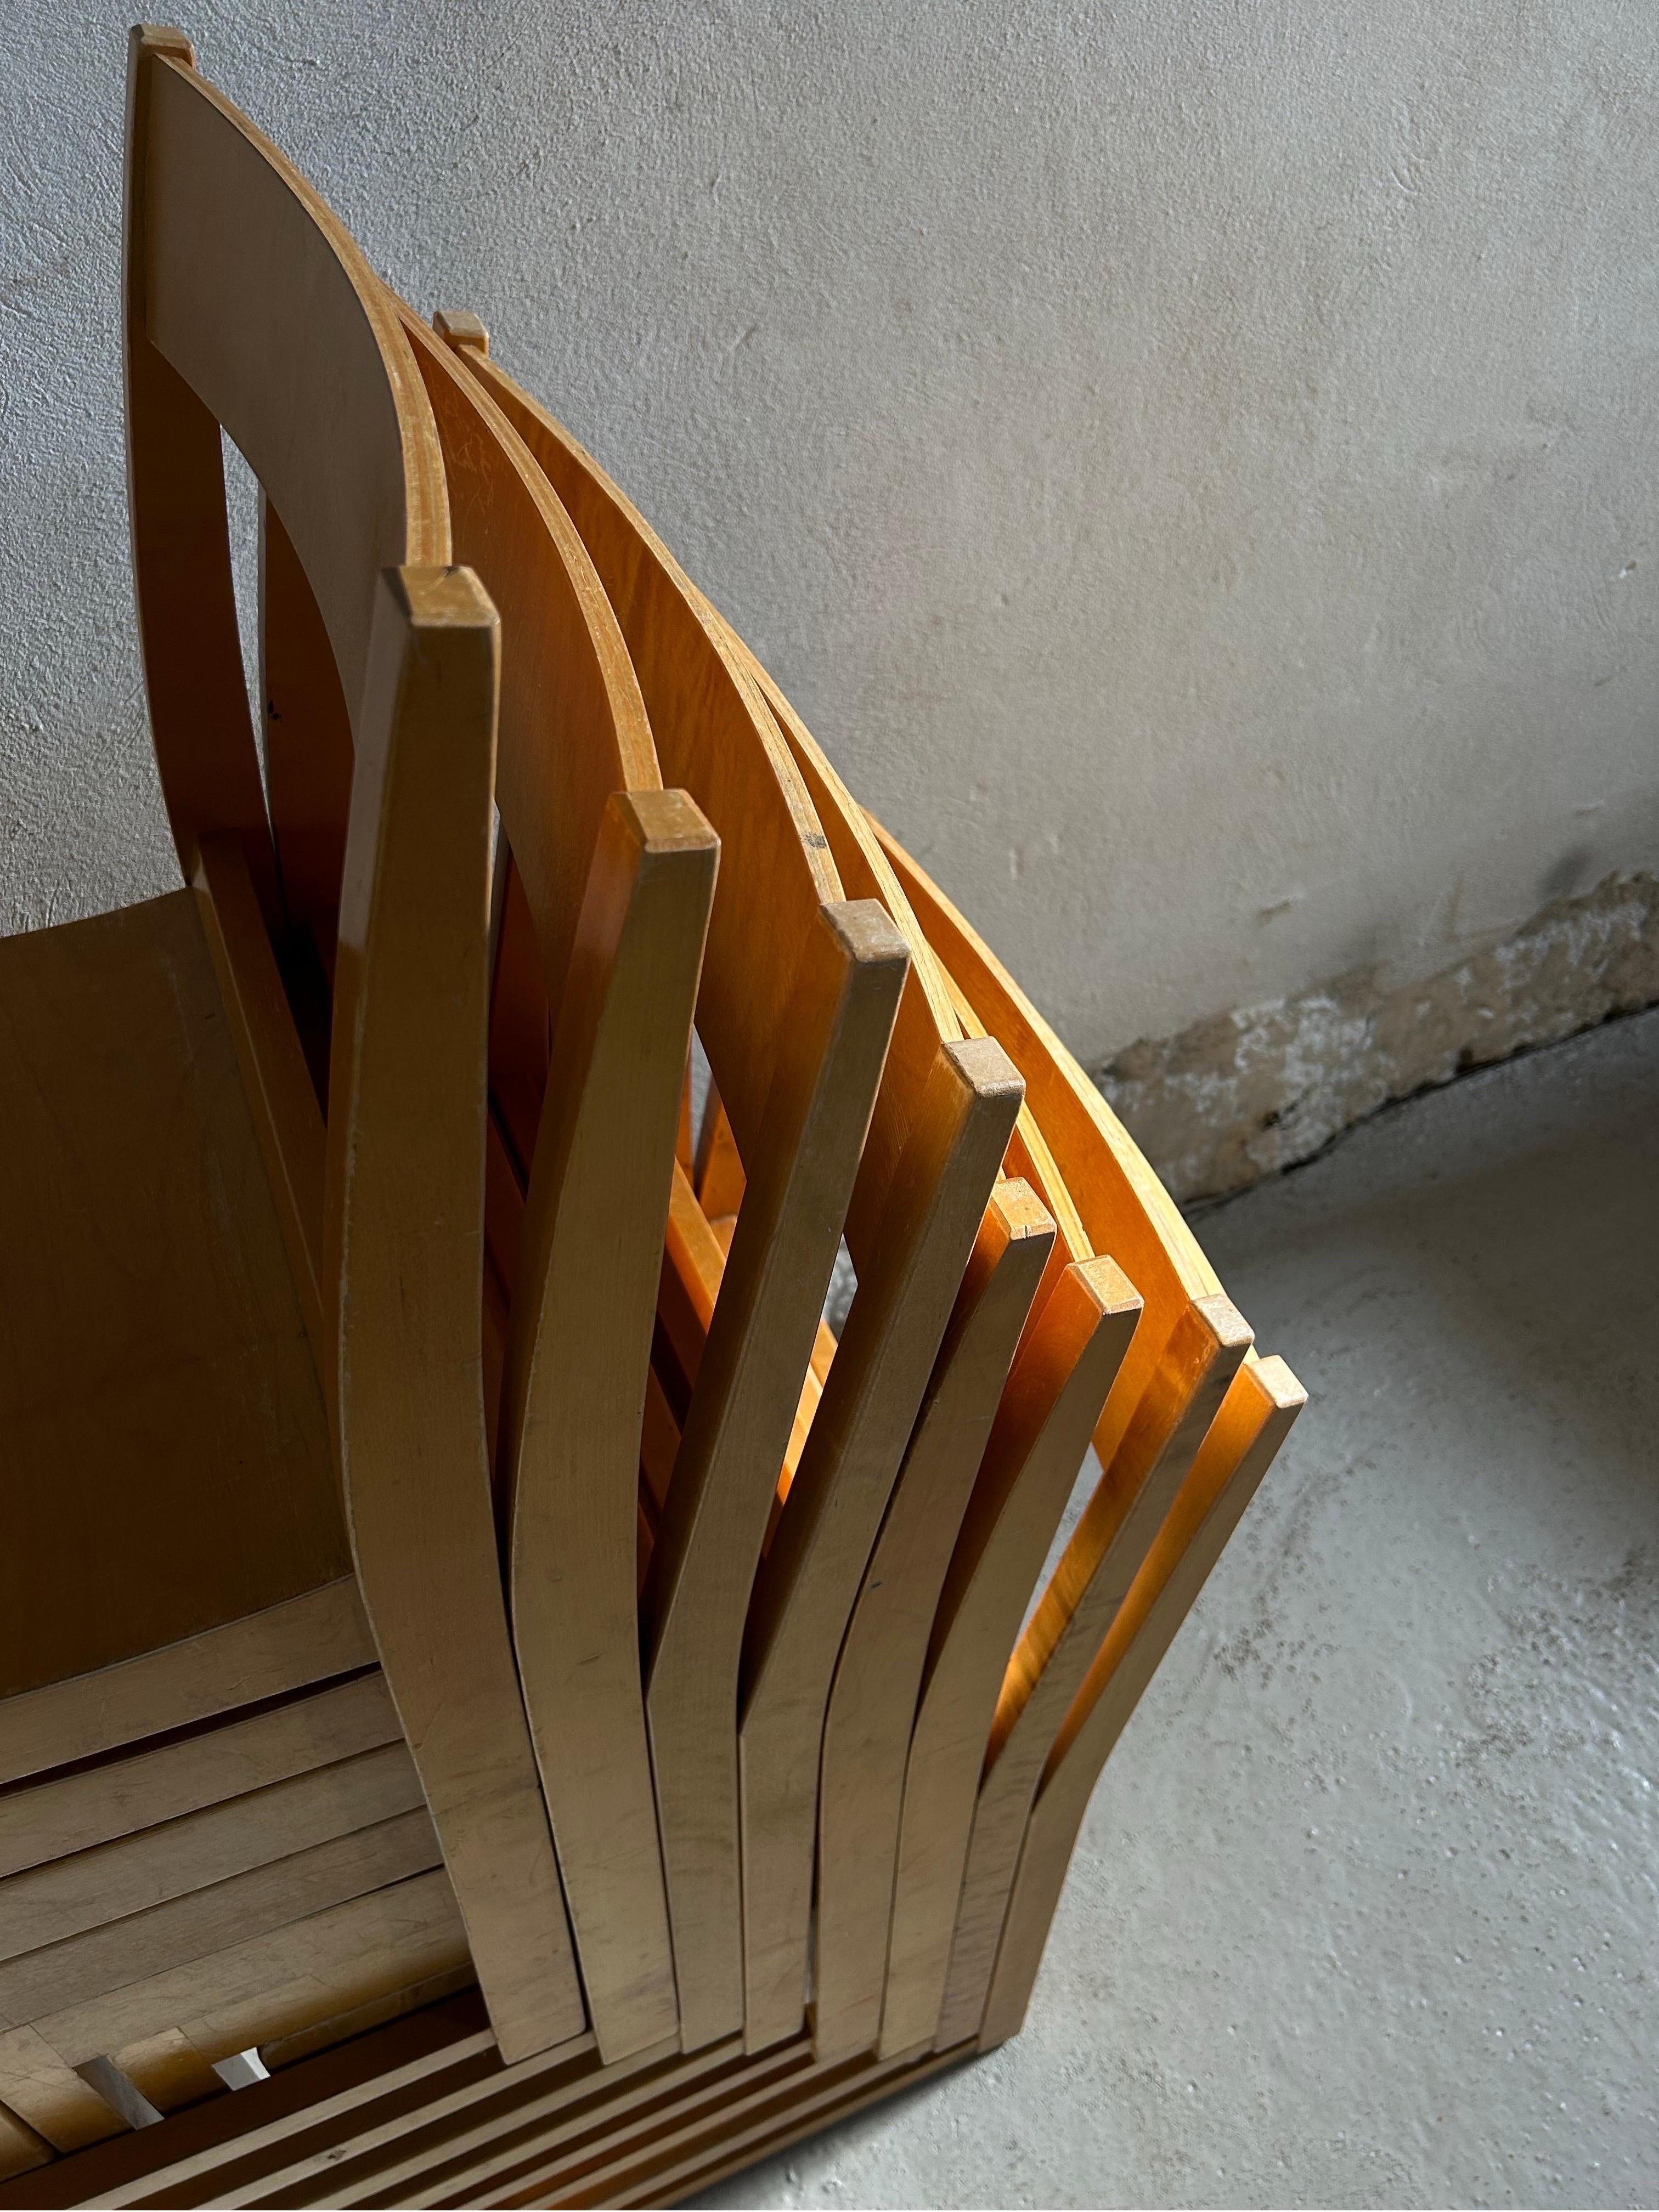 Ensemble de huit chaises d'orchestre Sven Markelius conçues pour la salle de concert d'Helsingborg en 1932.
Ces chaises spécifiques ont été fabriquées par Bodafors dans les années 1930. Elles sont en bouleau patiné et ont acquis au fil des ans une